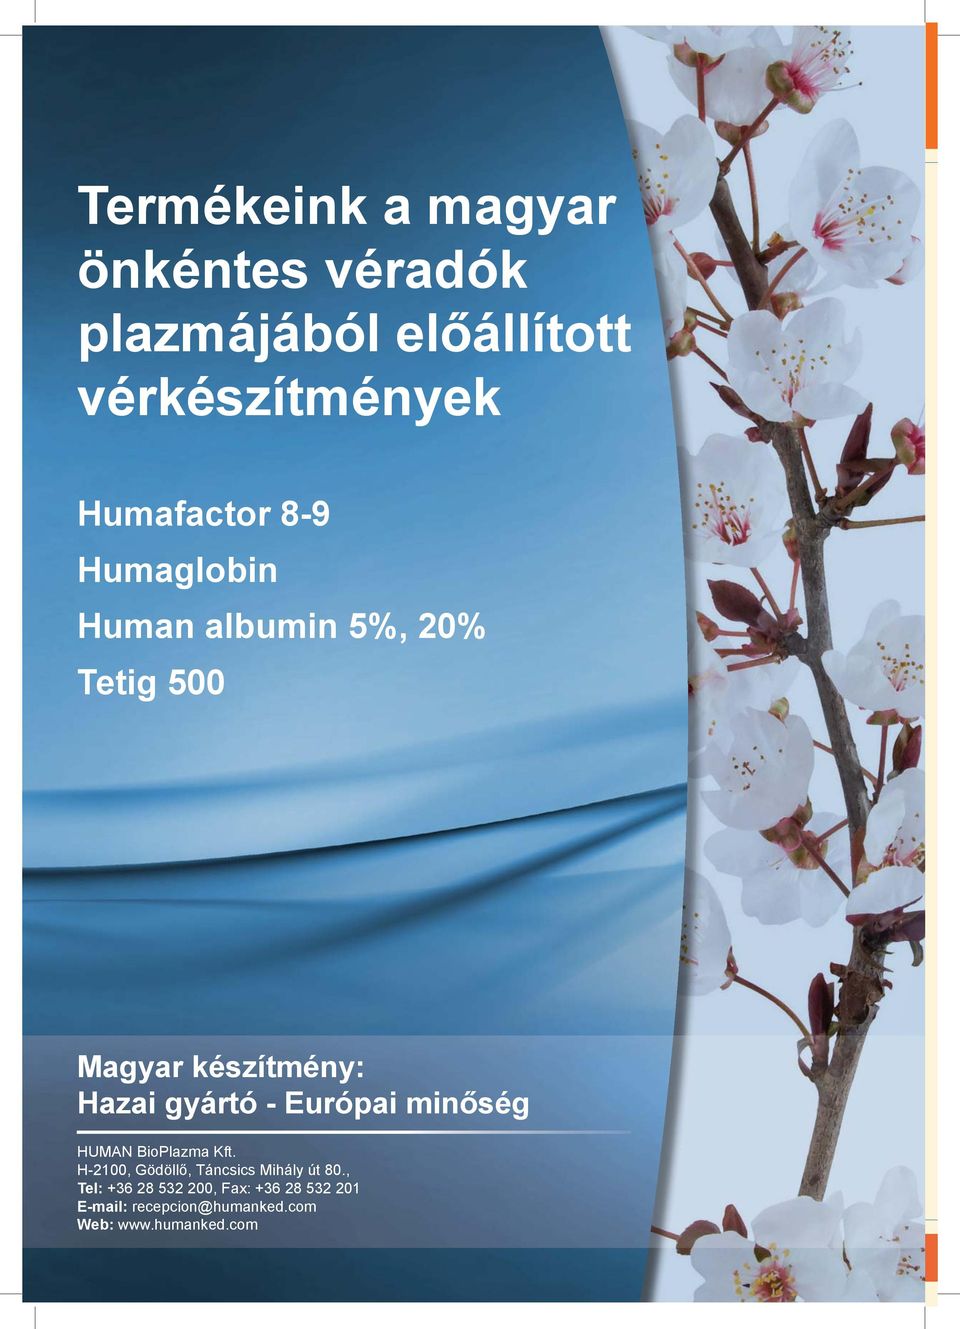 gyártó - Európai minőség HUMAN BioPlazma Kft. H-2100, Gödöllő, Táncsics Mihály út 80.